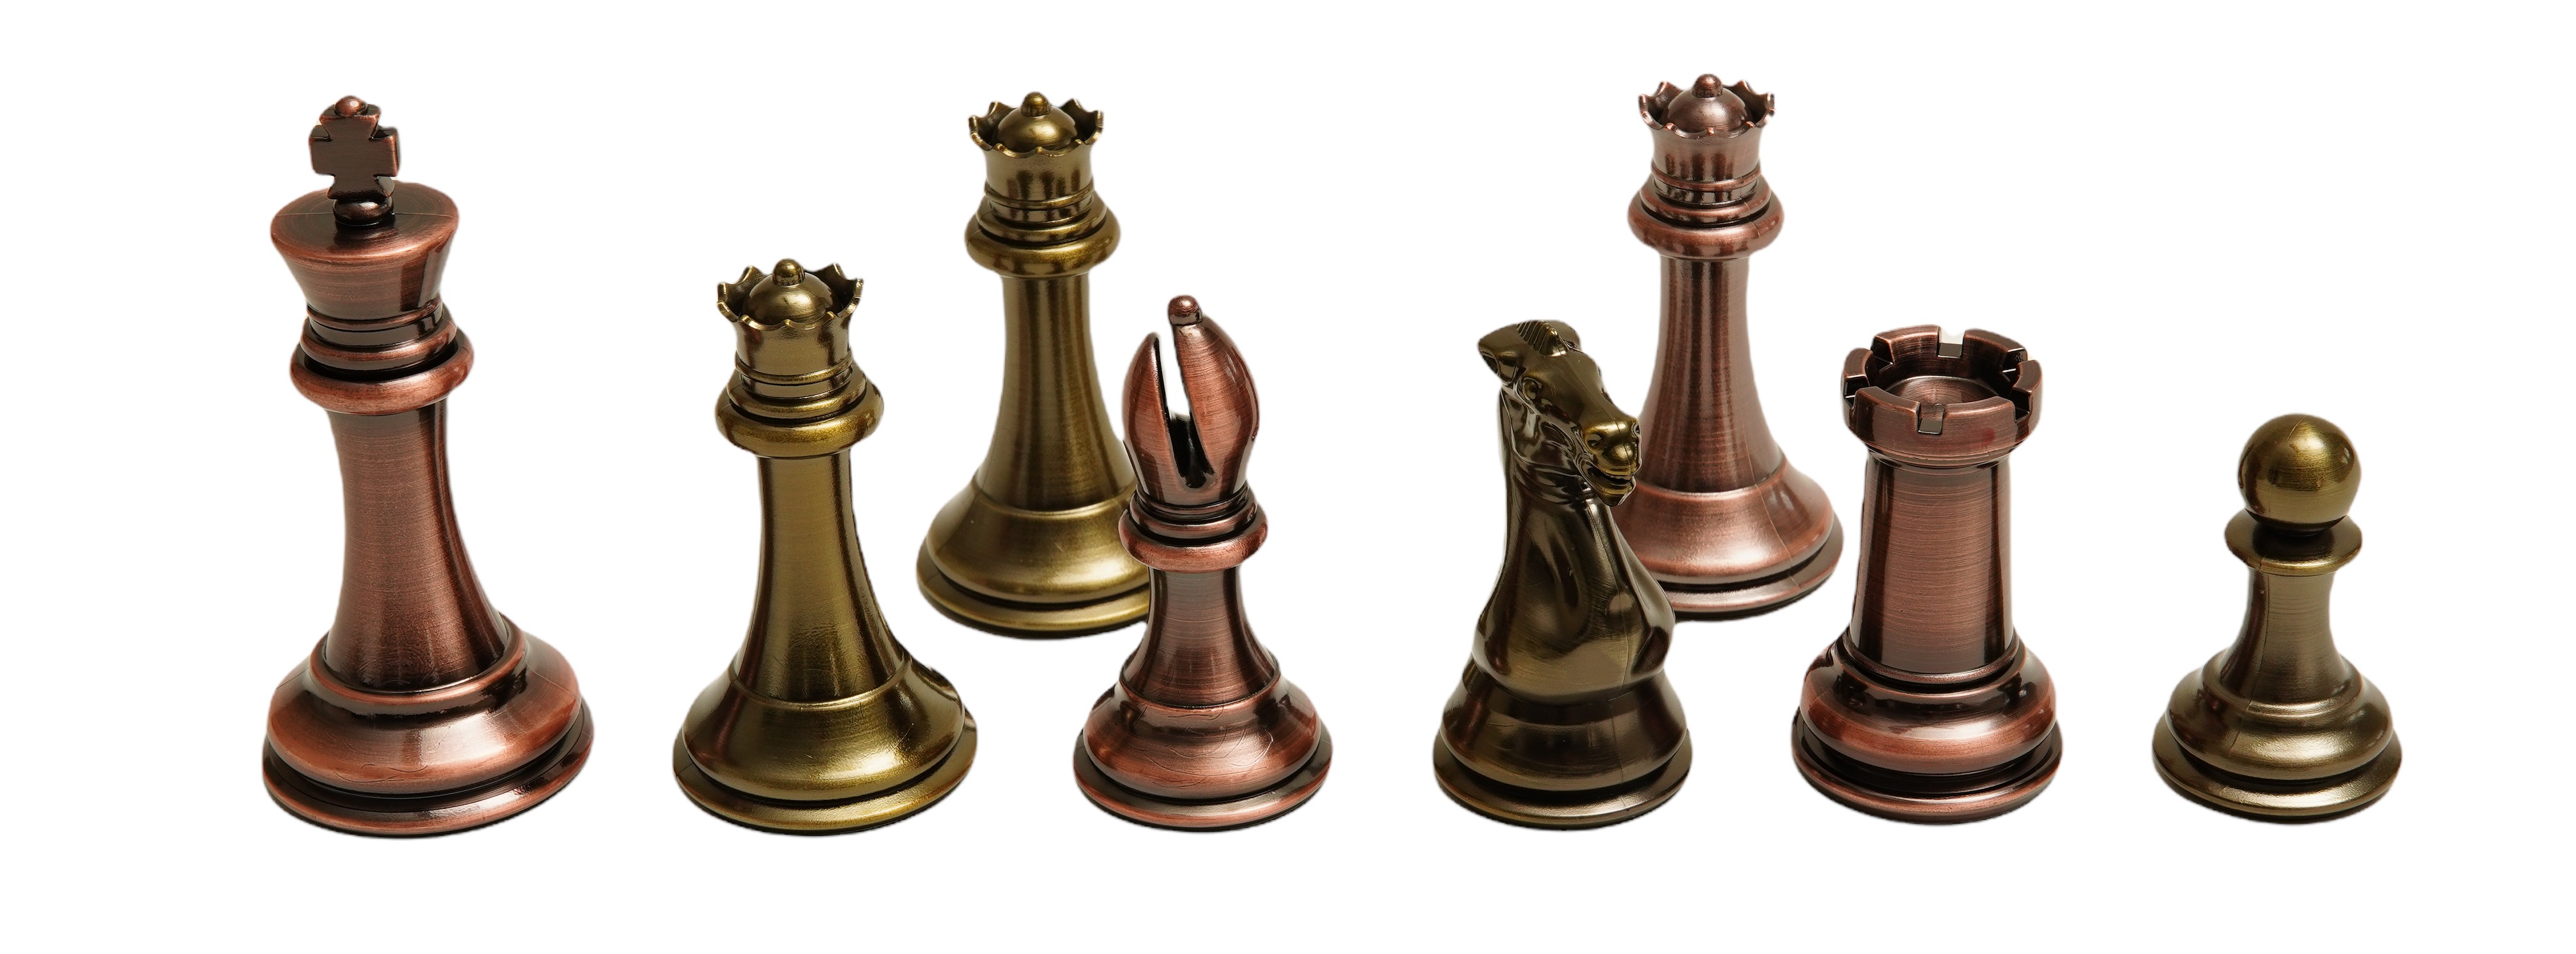 Solid Metal Queen's Gambit Staunton Style Chessmen